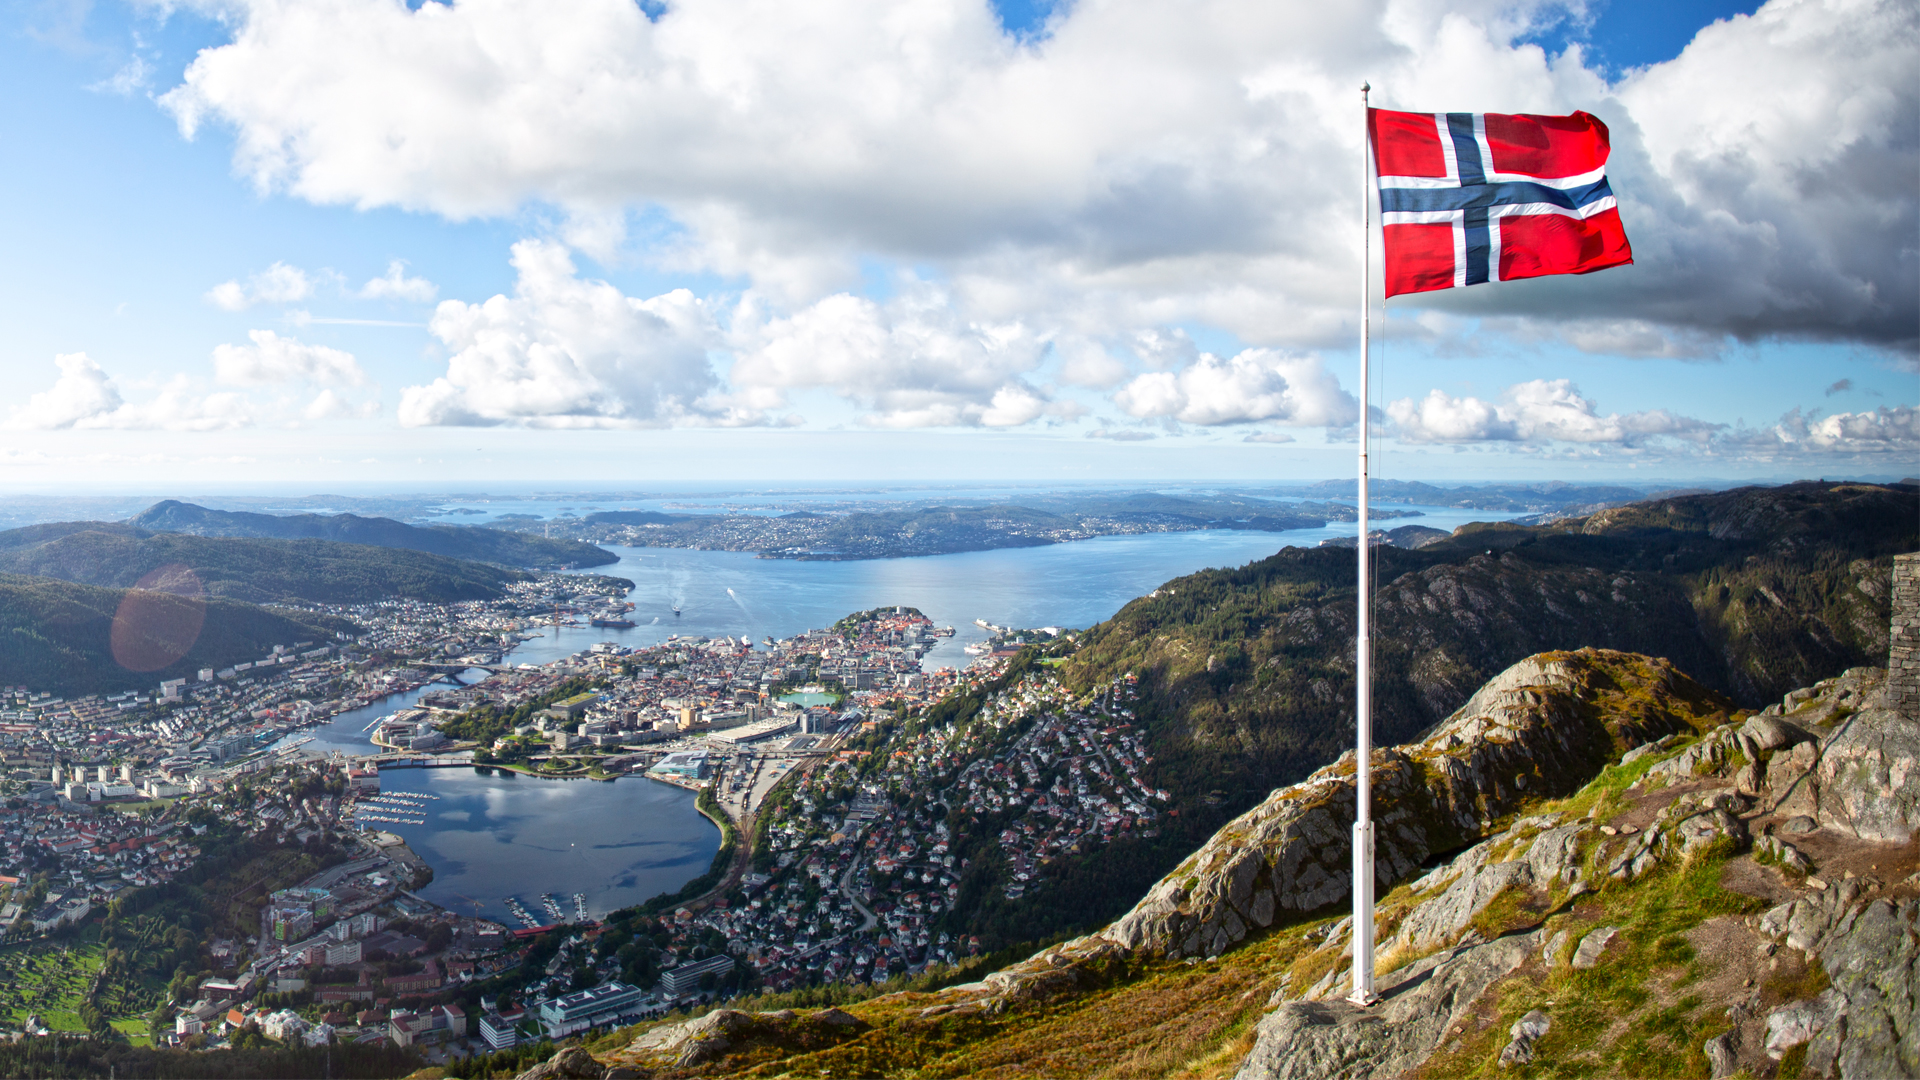 Norges Bank hebt Leitzins an: Was das für norwegische Aktien wie Nel ASA oder Tomra bedeutet (Foto: Shutterstock)